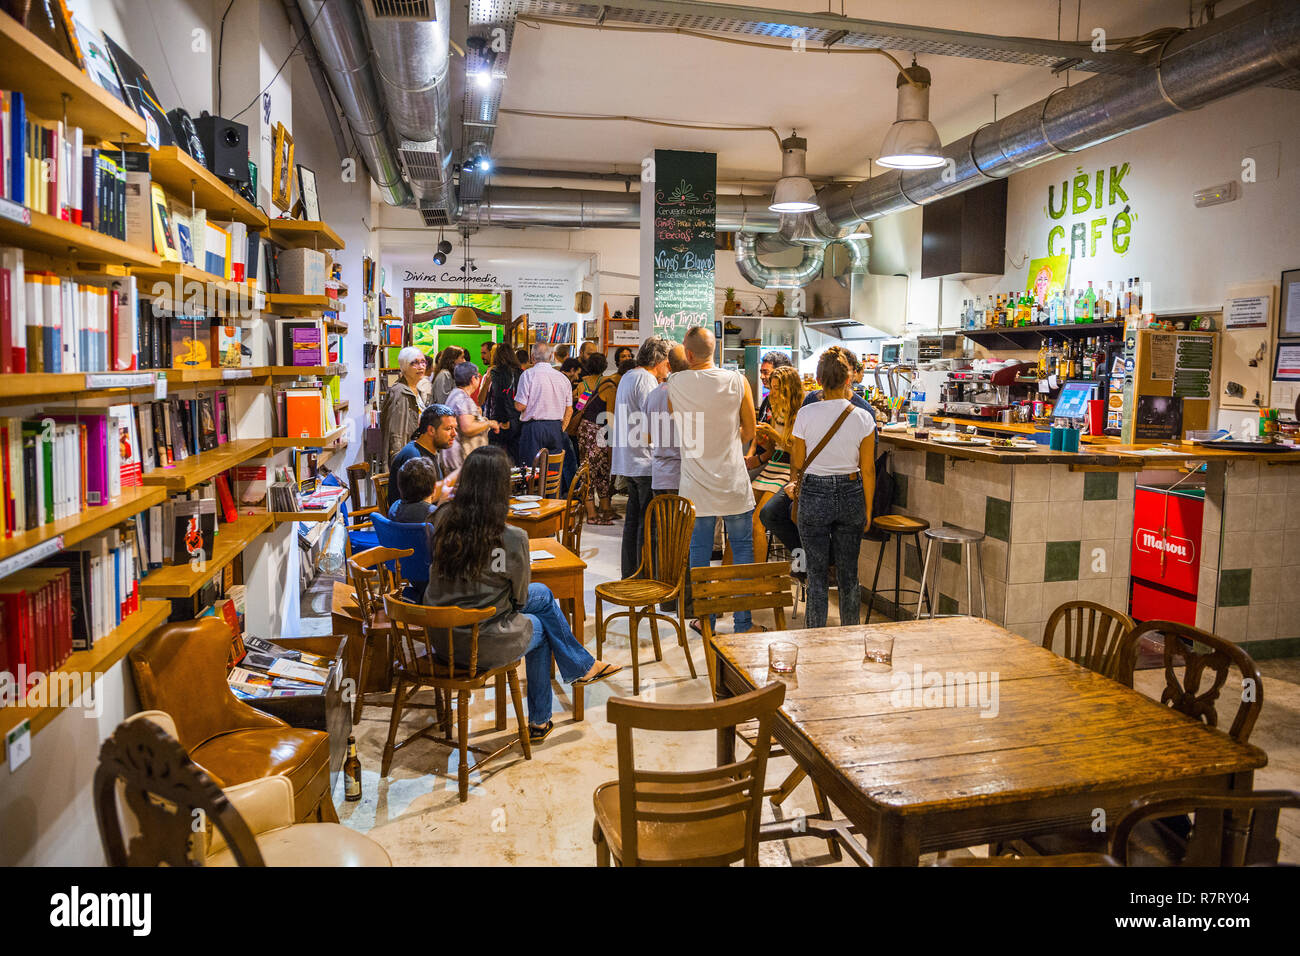 Ubik Cafe. Ruzafa. Valencia. Comunidad Valenciana. Spain Stock Photo